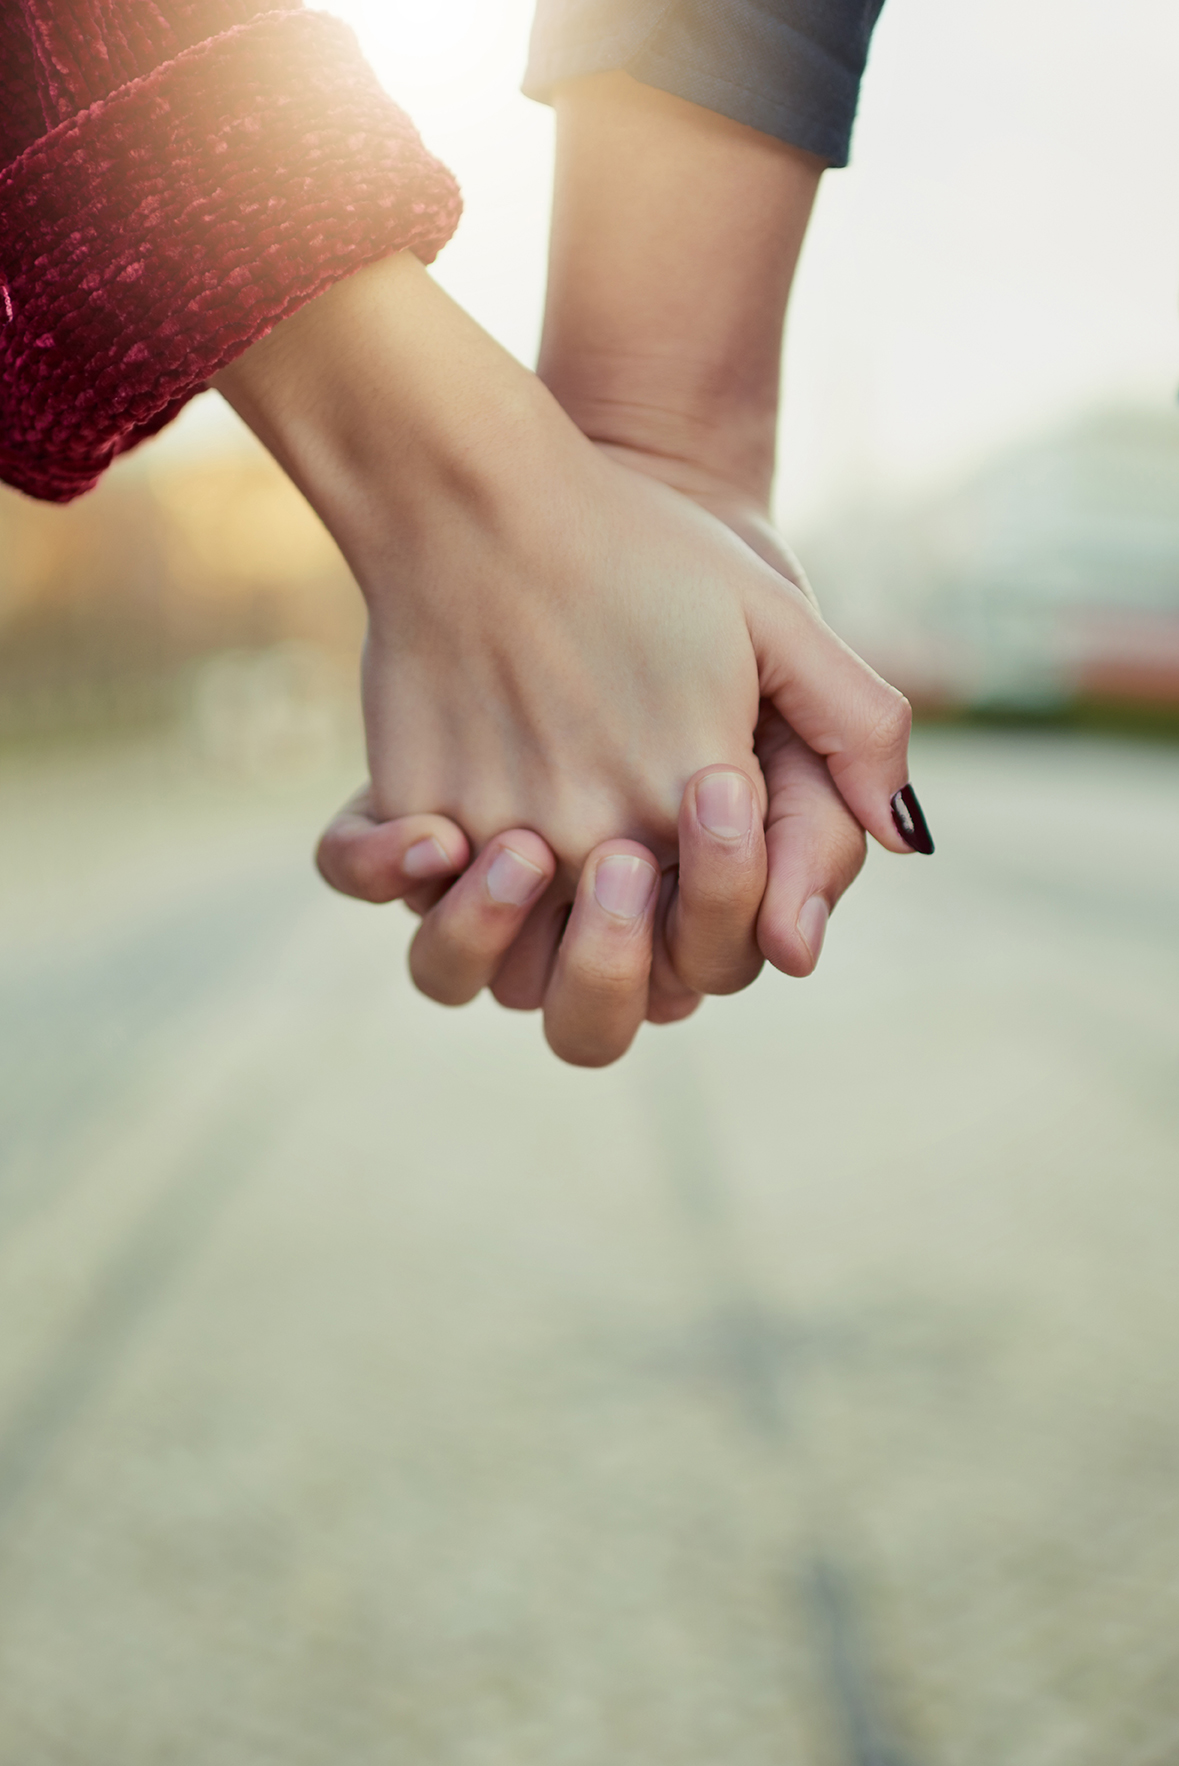 At finde hinanden igen. Støtte og holde fast i hinandens hænder, giv ikke slip på det vi har.